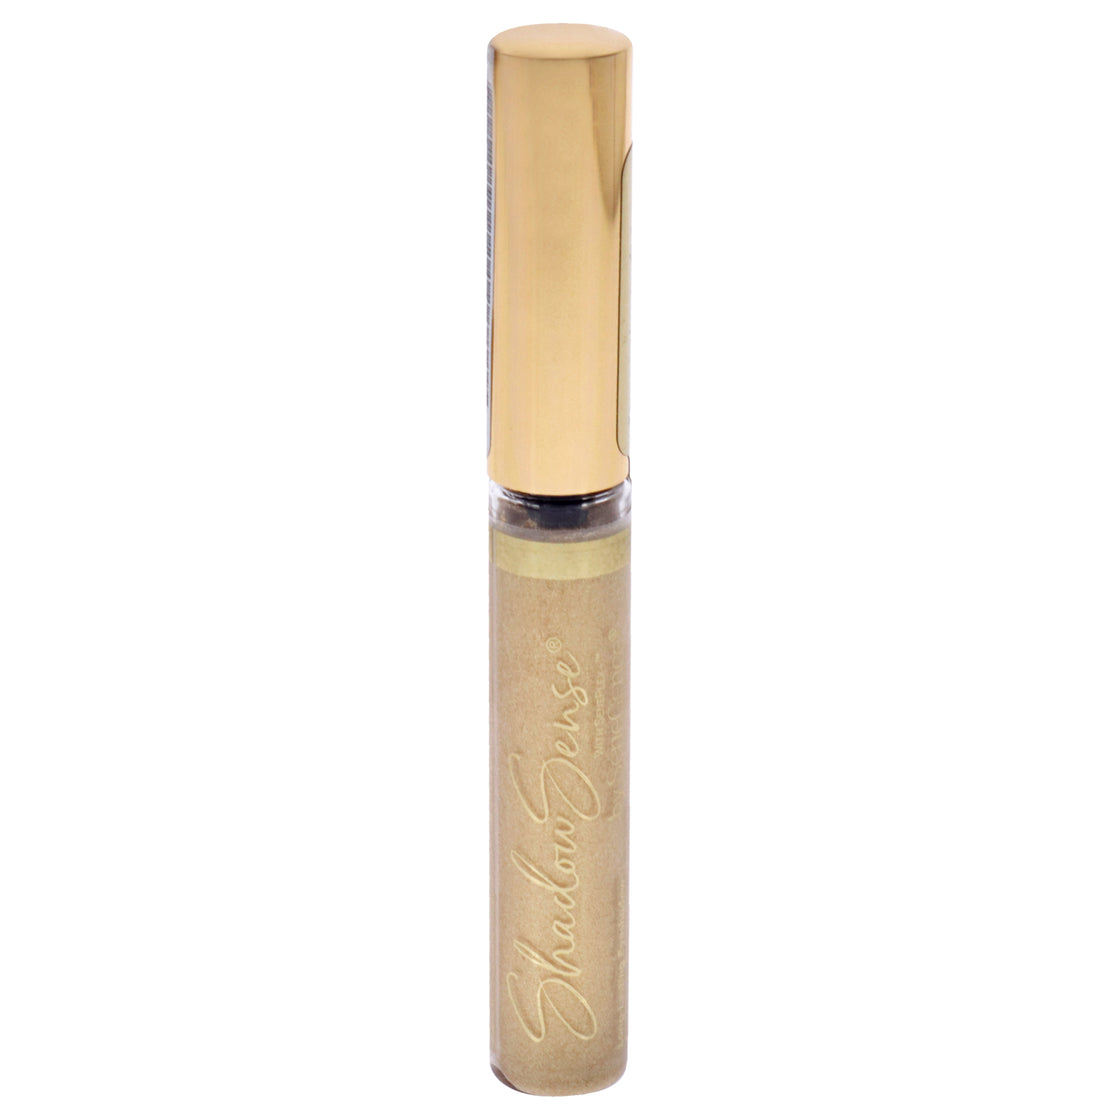 ShadowSense Cream To Powder Eyeshadow - Radiant Gold Glitter by SeneGence for Women - 0.2 oz Eye Shadow